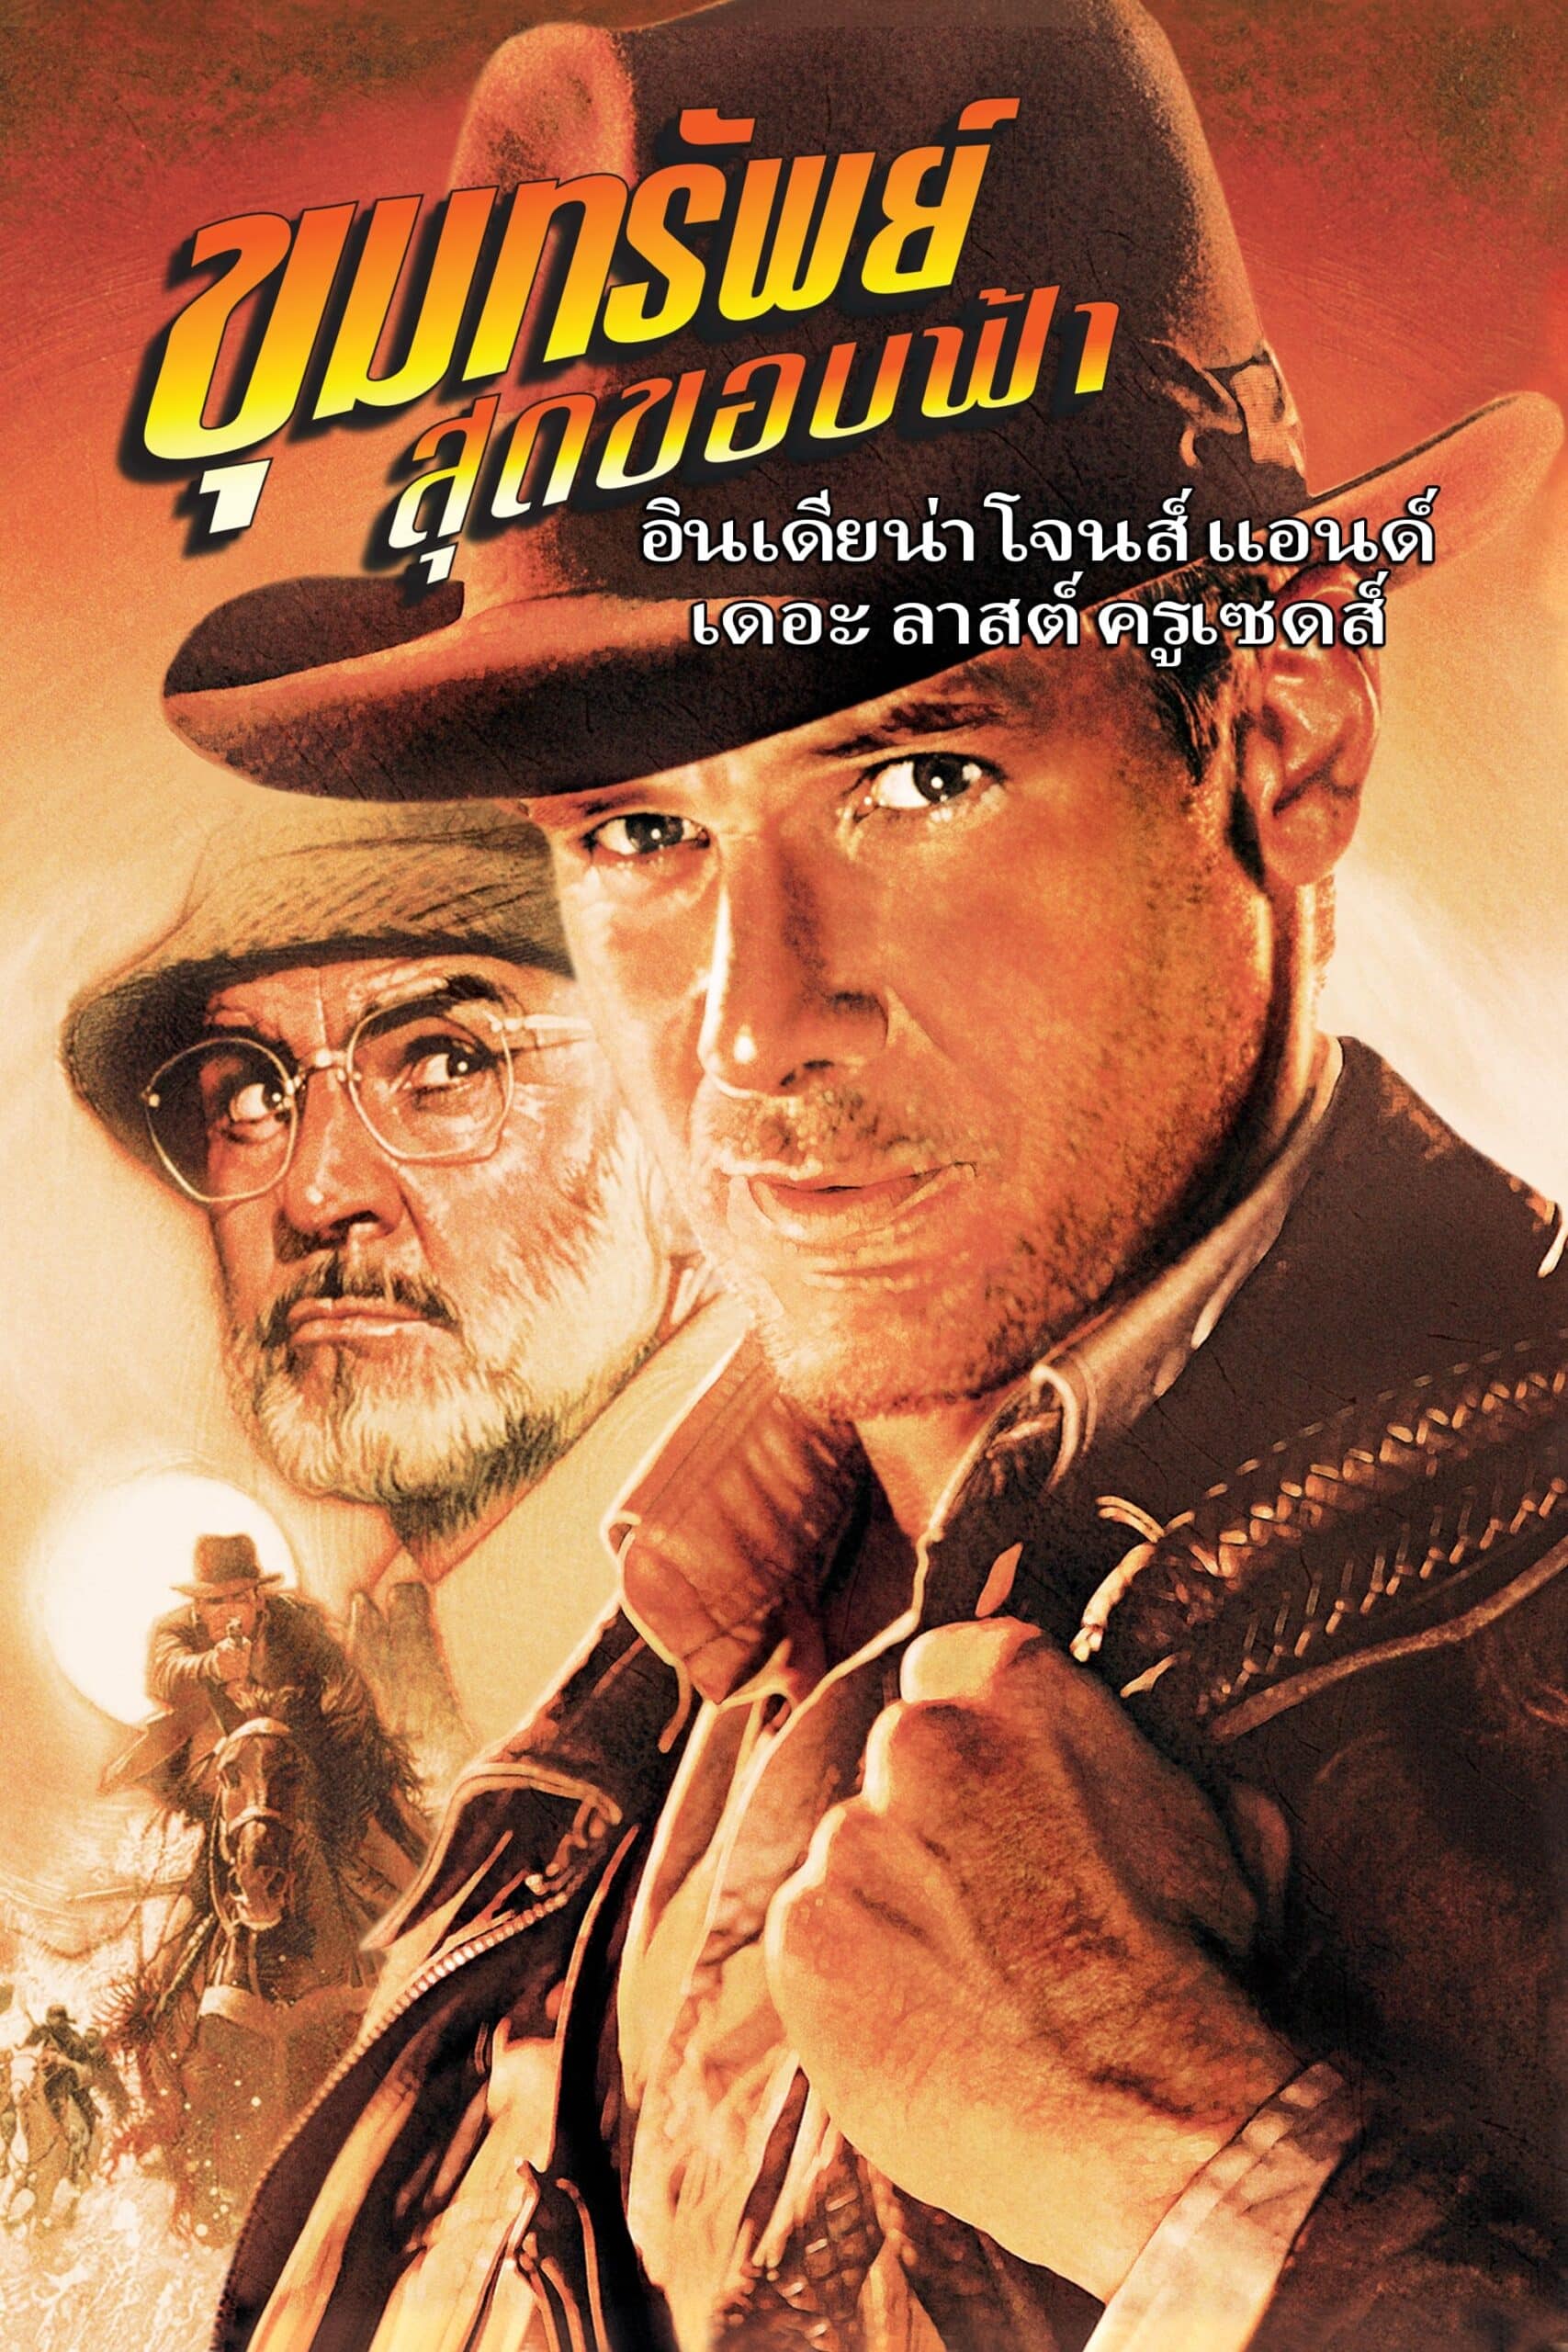 ดูหนังออนไลน์ฟรี Indiana Jones and the Last Crusade 1989